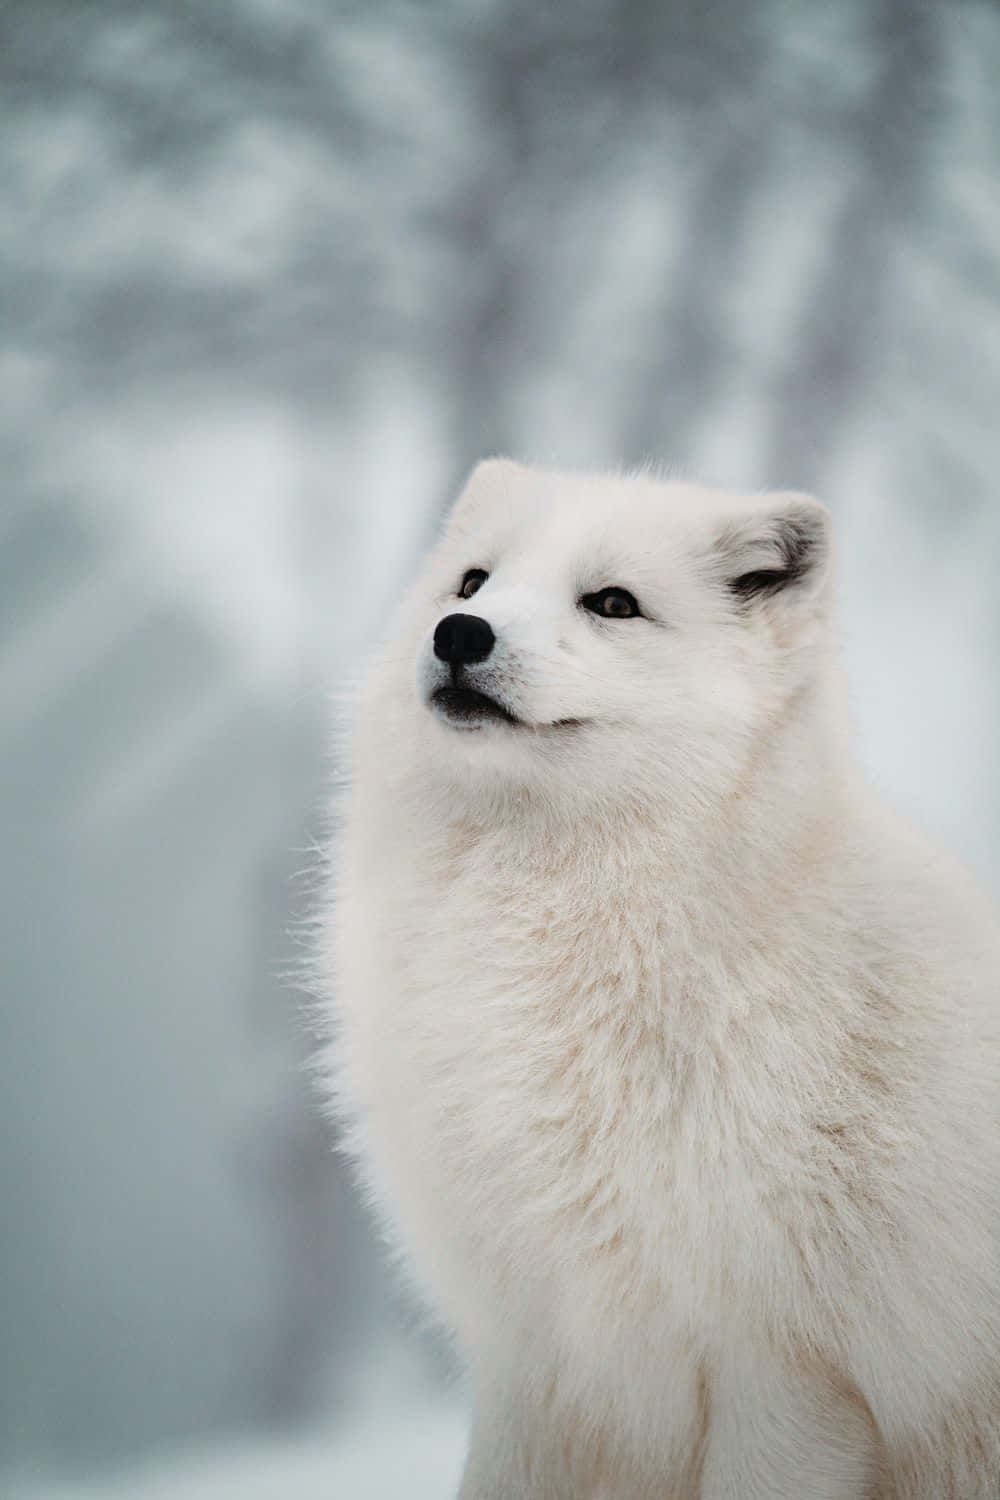 Adorable Arctic Fox in its Natural Habitat